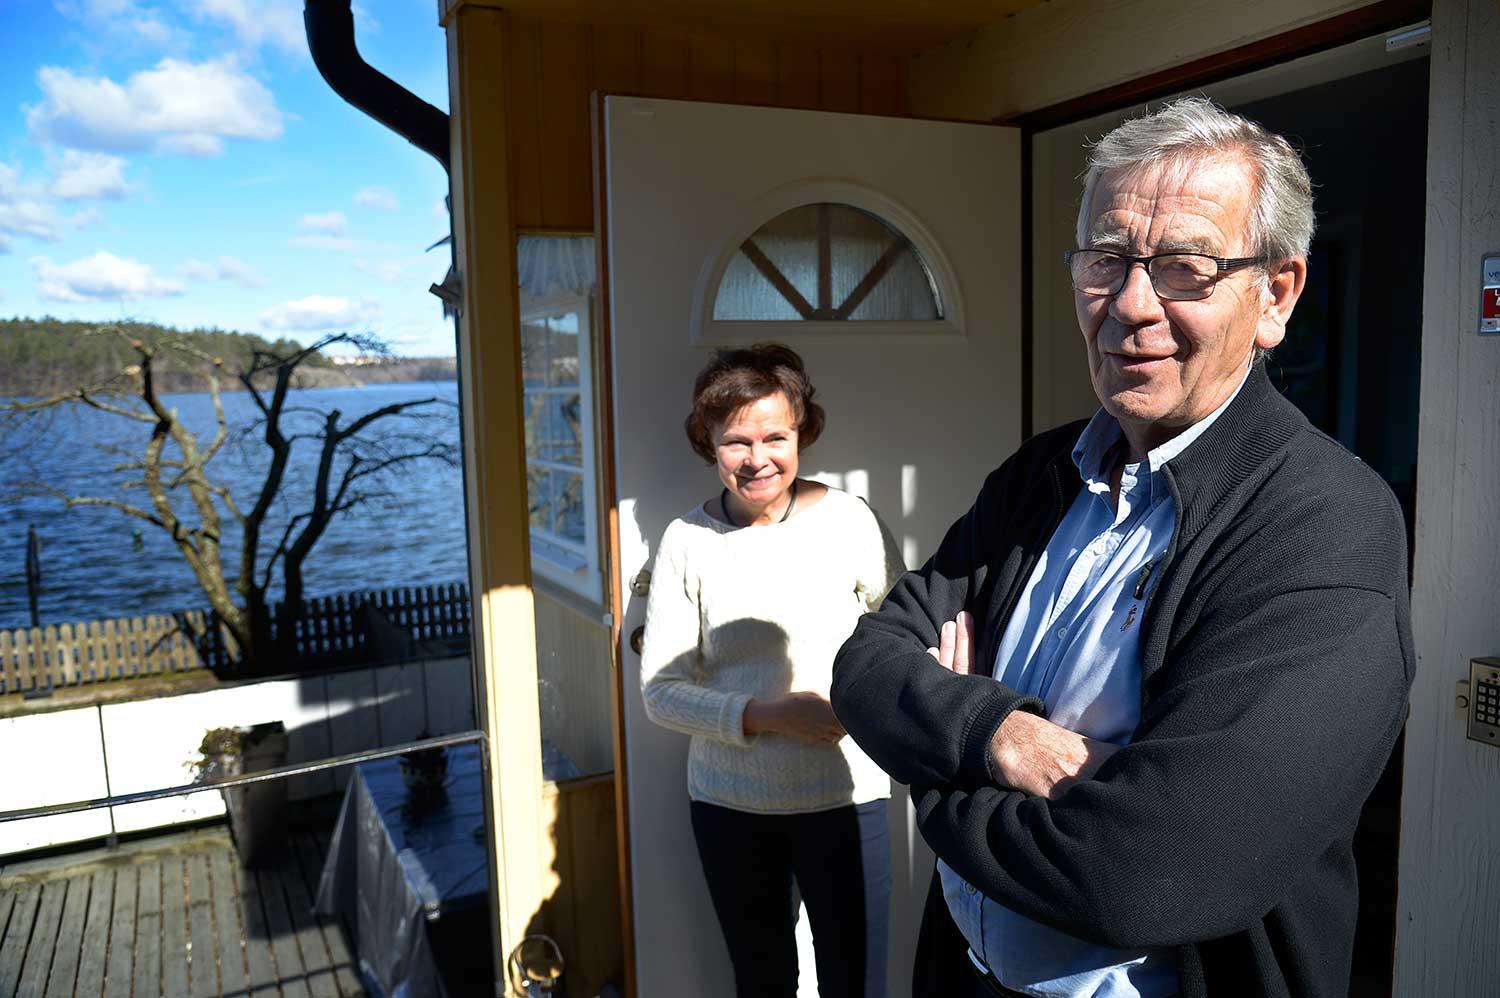 "De som  bor i mer välsituerade områden sätter större värde på båt och vatten", säger Peter Althin, som bor i en bostadsrätt i Mälarhöjden med hustrun Birgit.